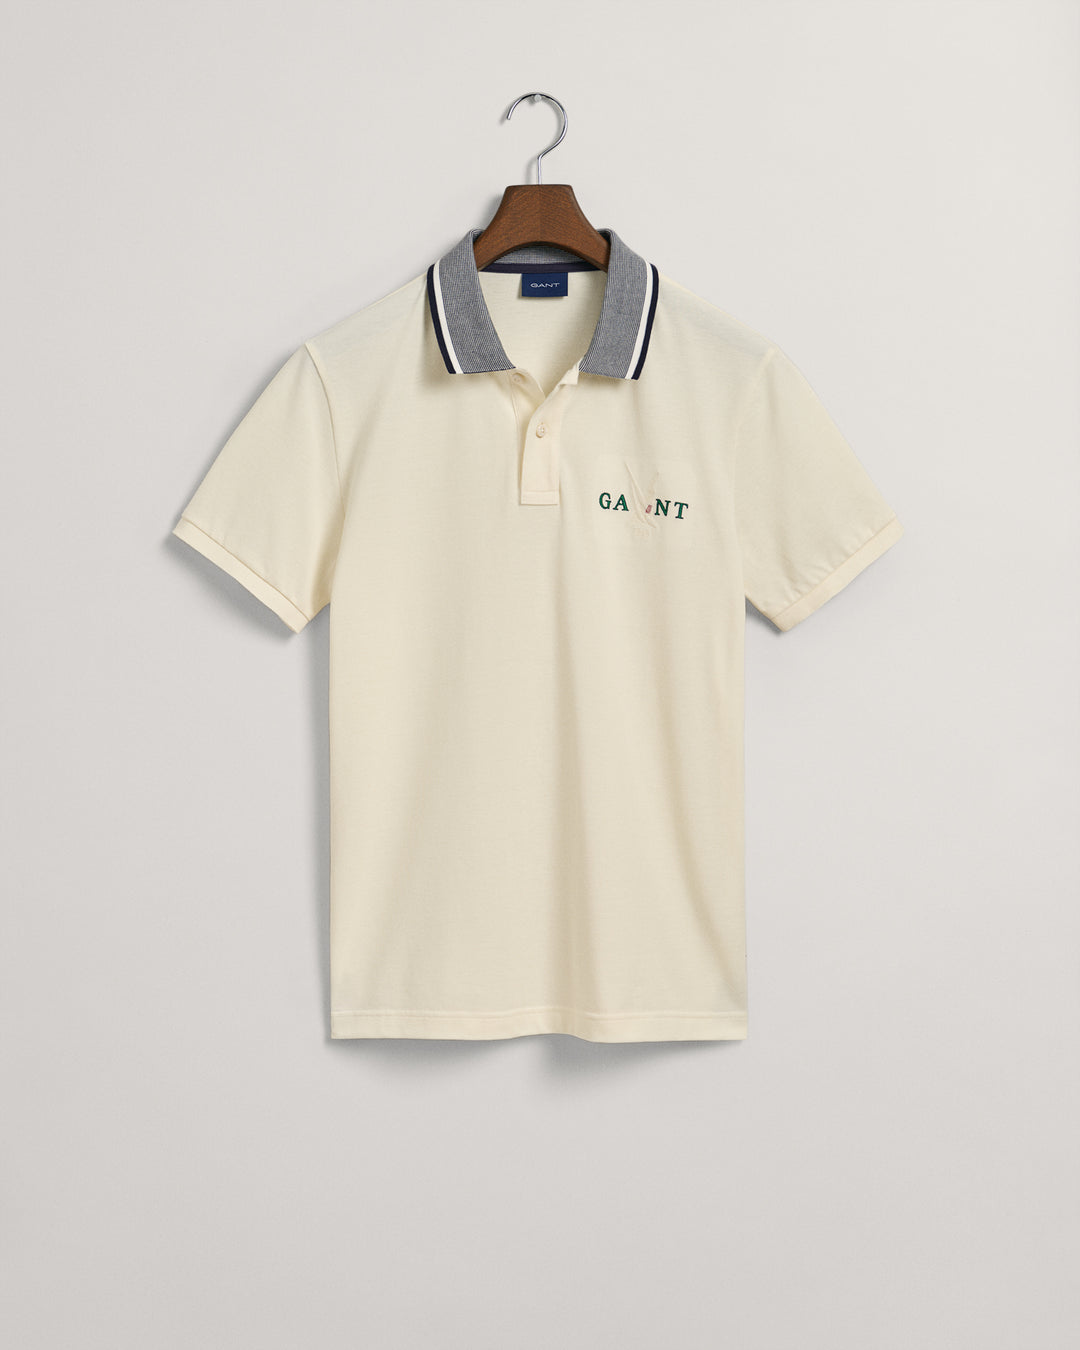 GANT Sail Graphic Piqué Polo Shirt/Polo Majica 2062015